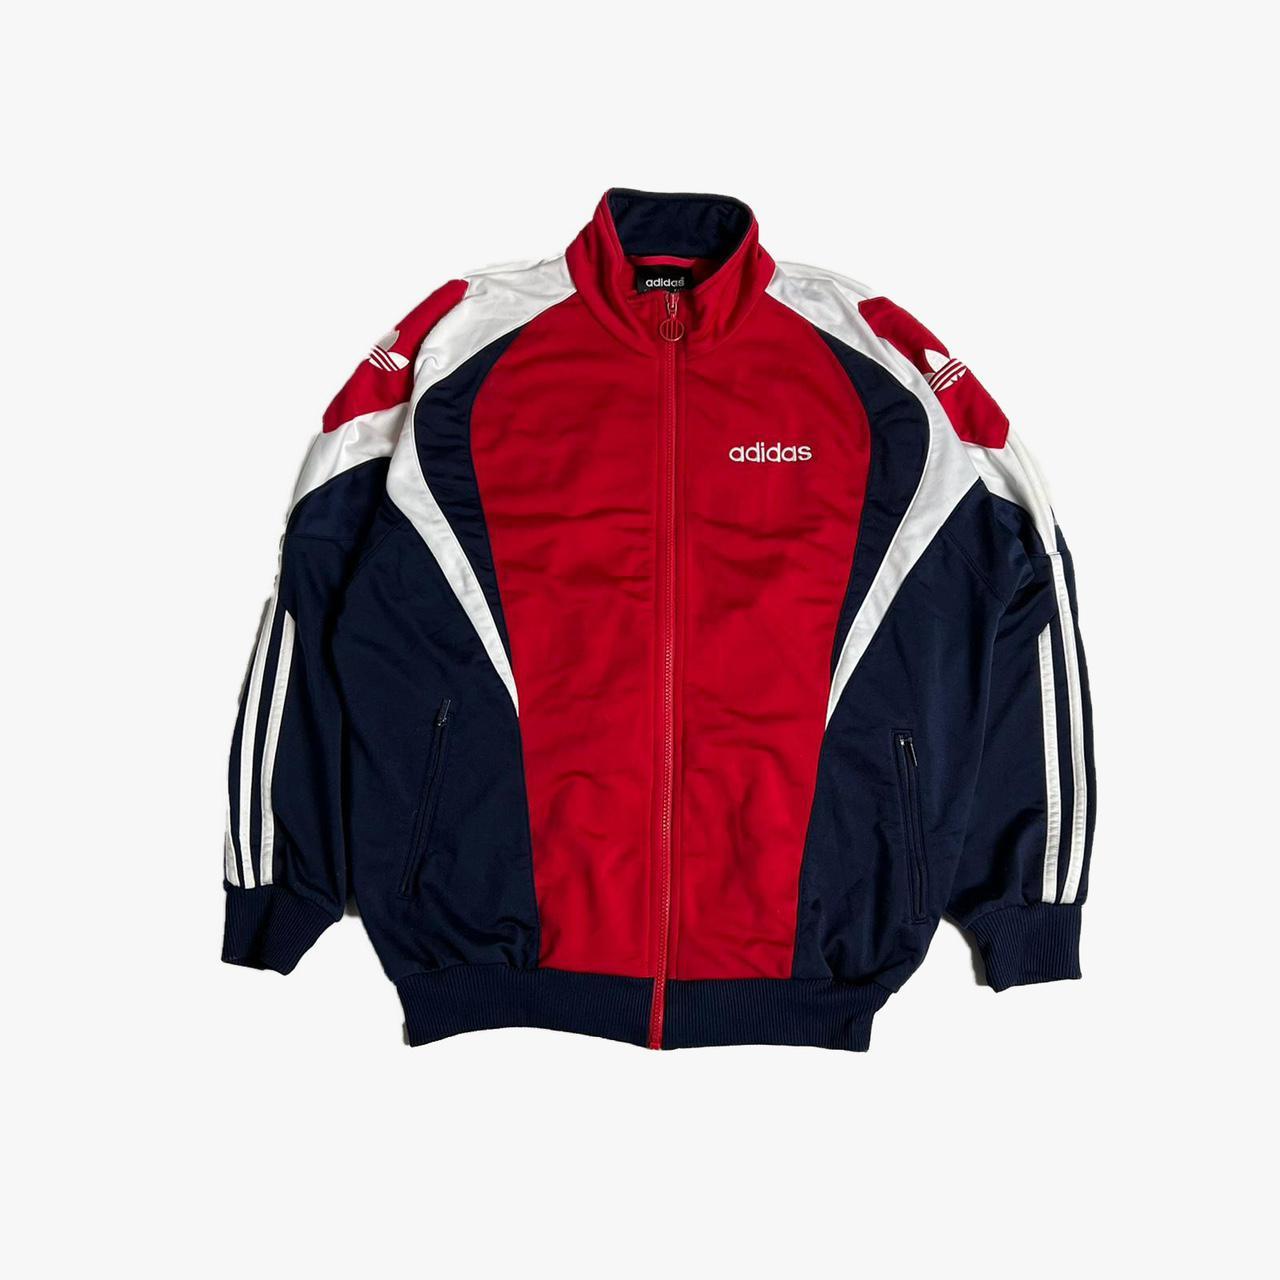 Vintage 90’s Adidas track jacket. Size medium/... - Depop